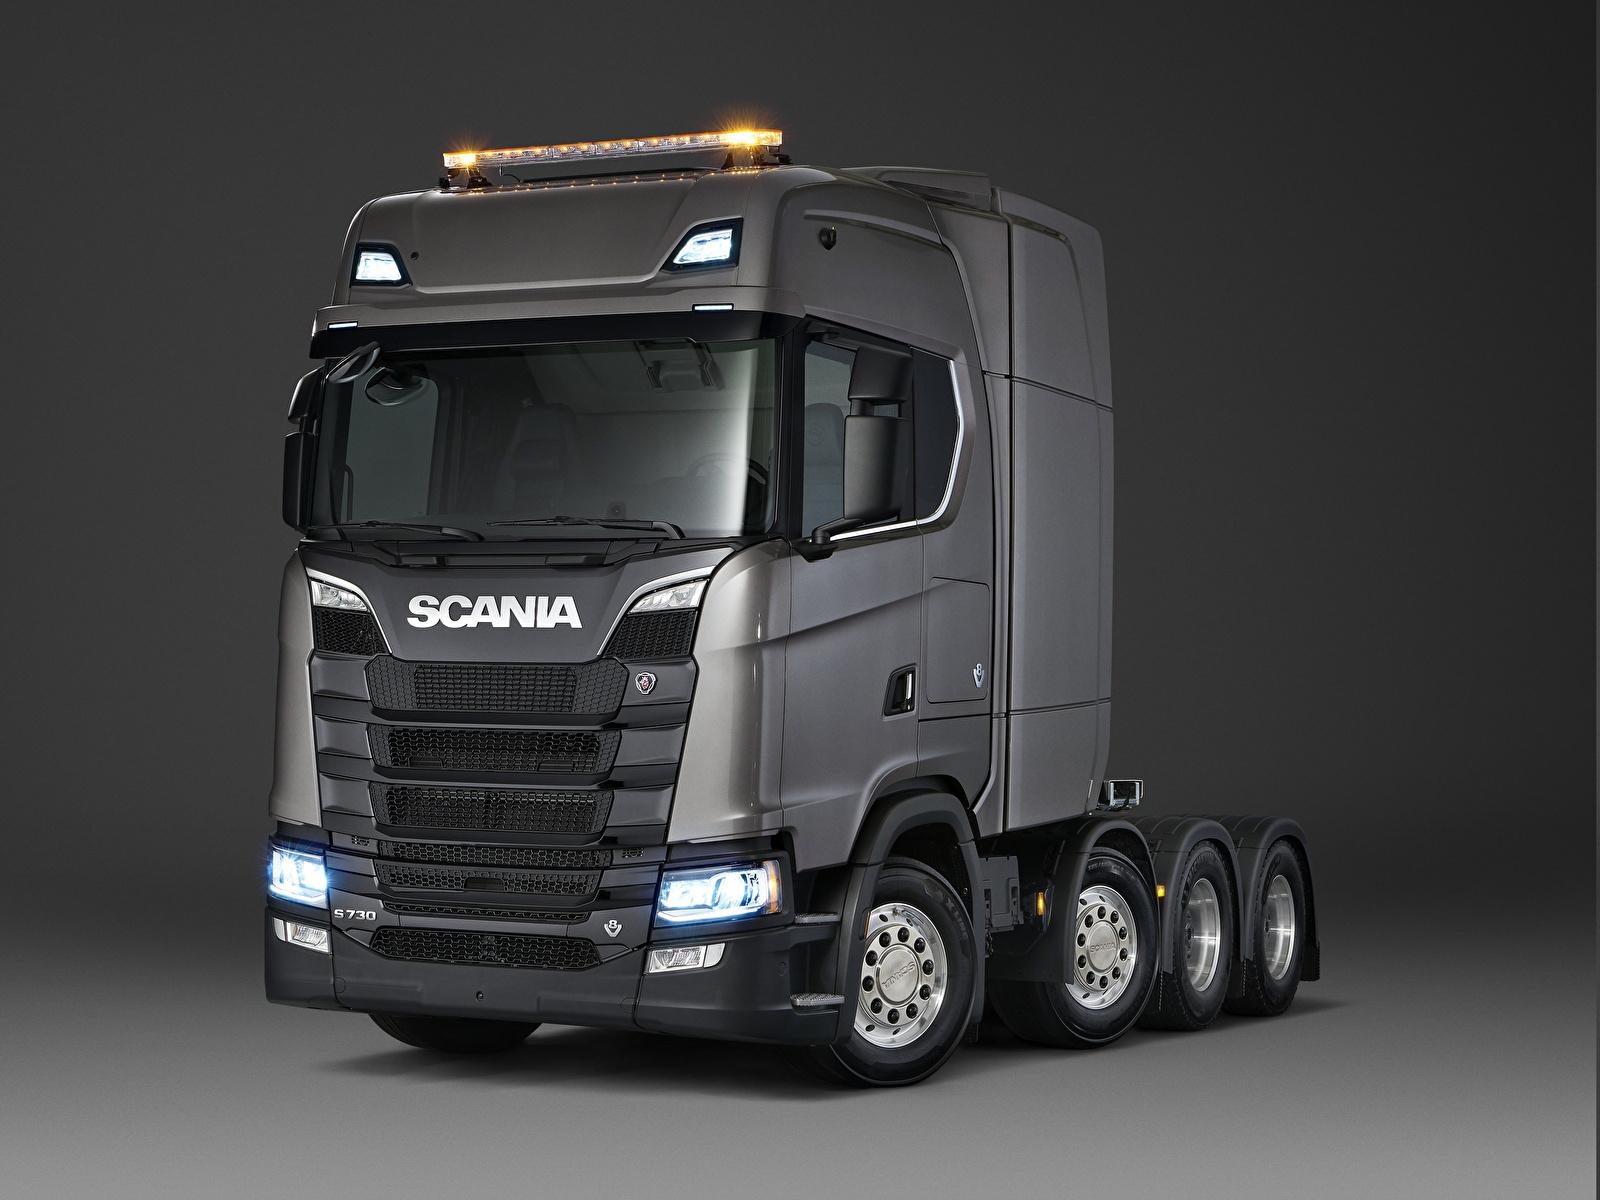 Photos Scania Trucks S 730 Grey Cars 1600x1200